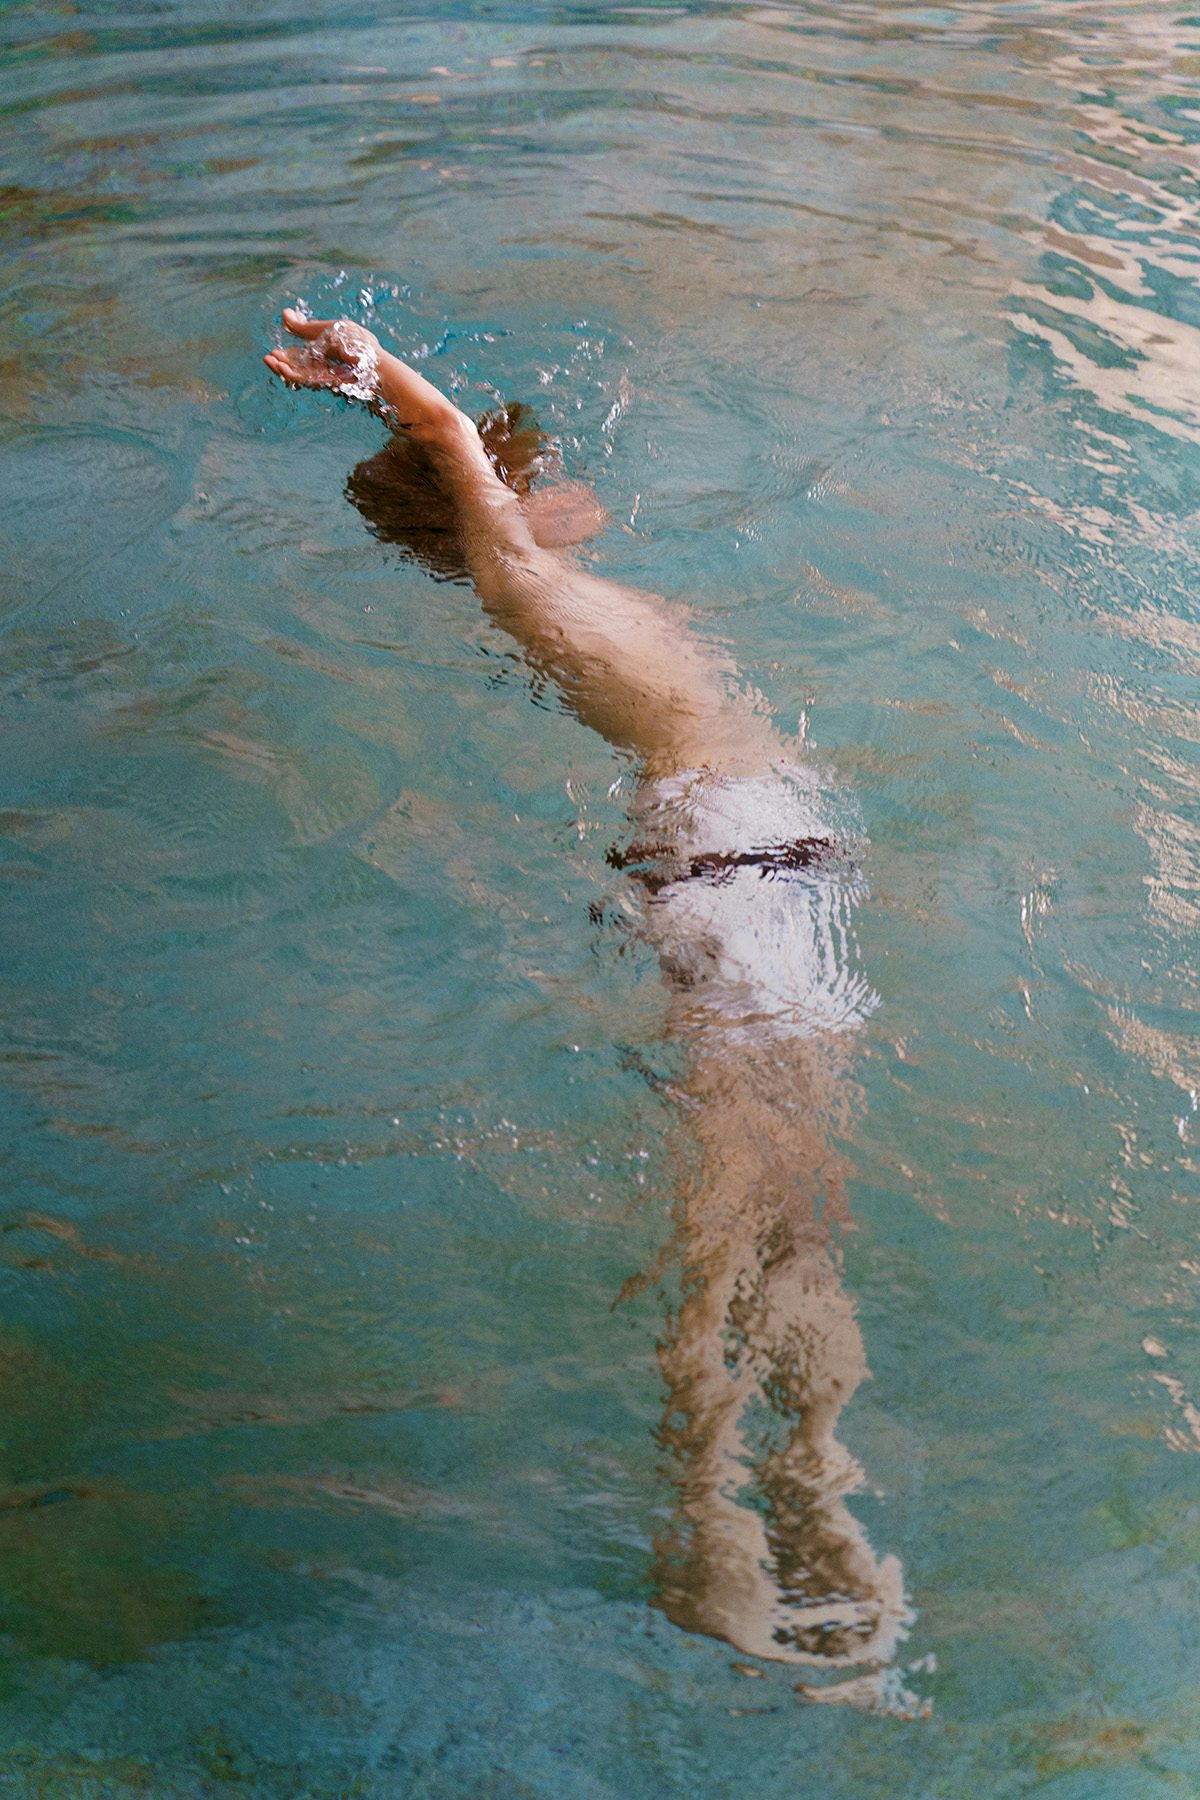 A boy underwater